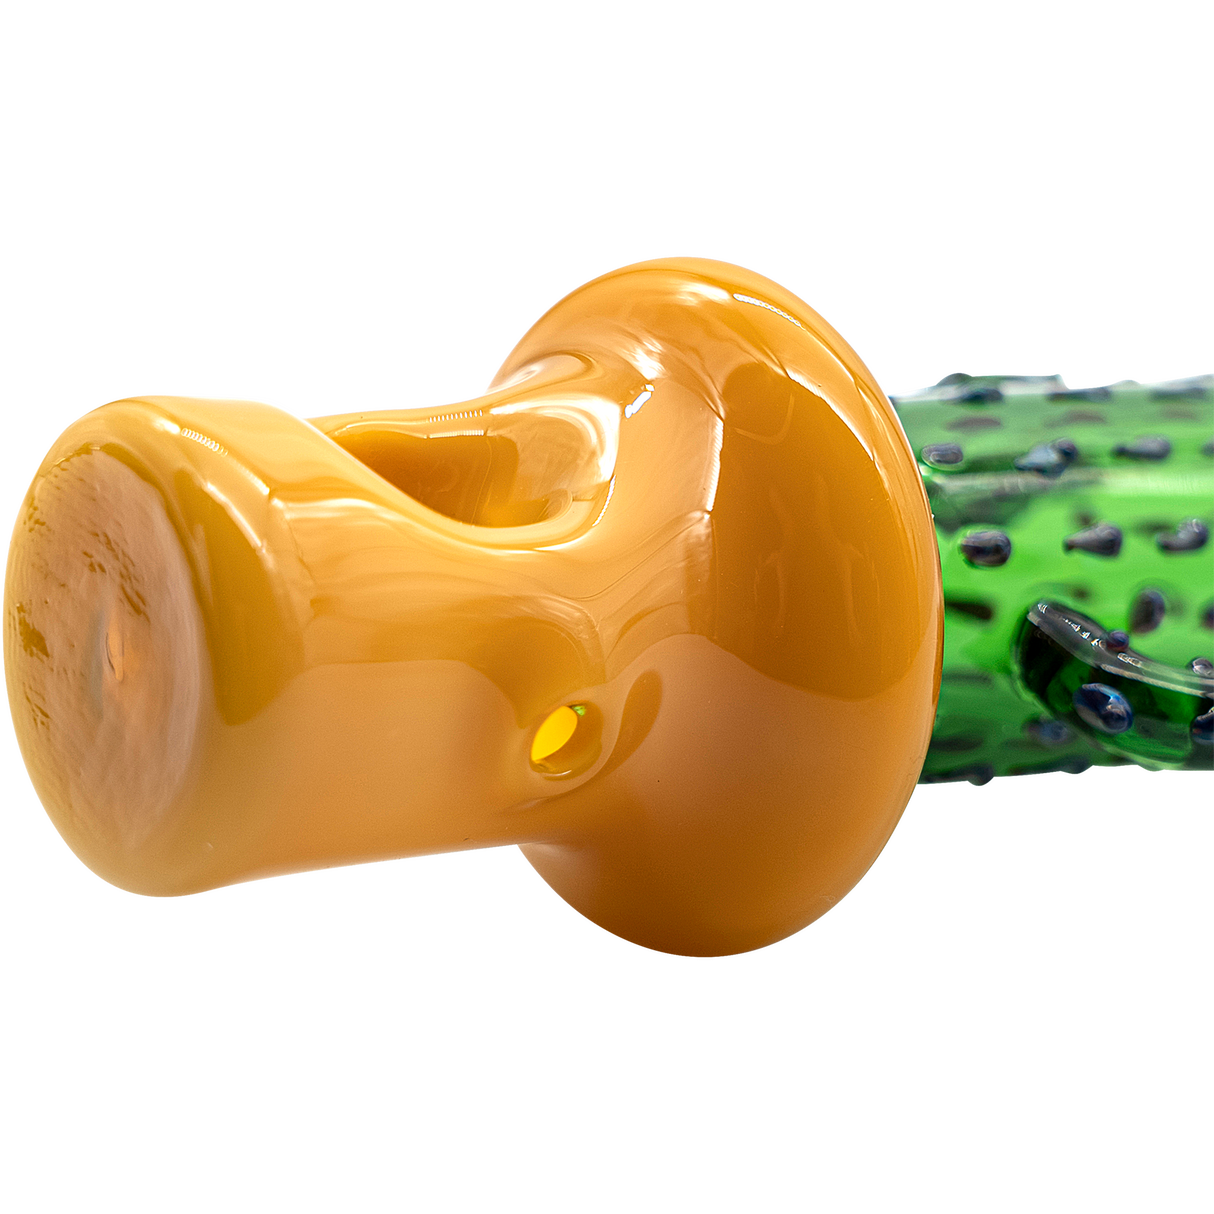 LA Pipes Glass Saguaro Cactus Pipe in Green, 5" Spoon Design, Borosilicate Glass